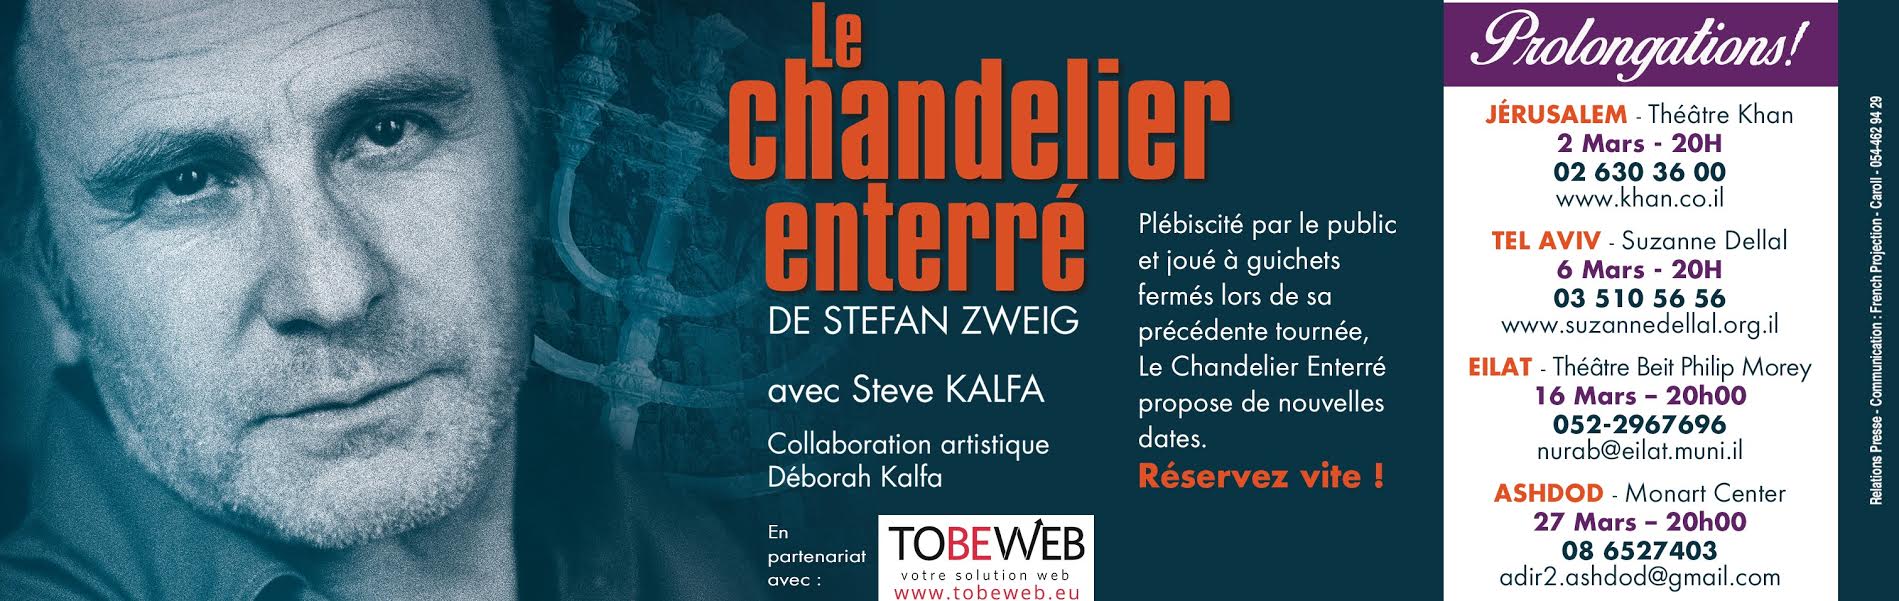 theatre le chandelier enterre 27-3-2016